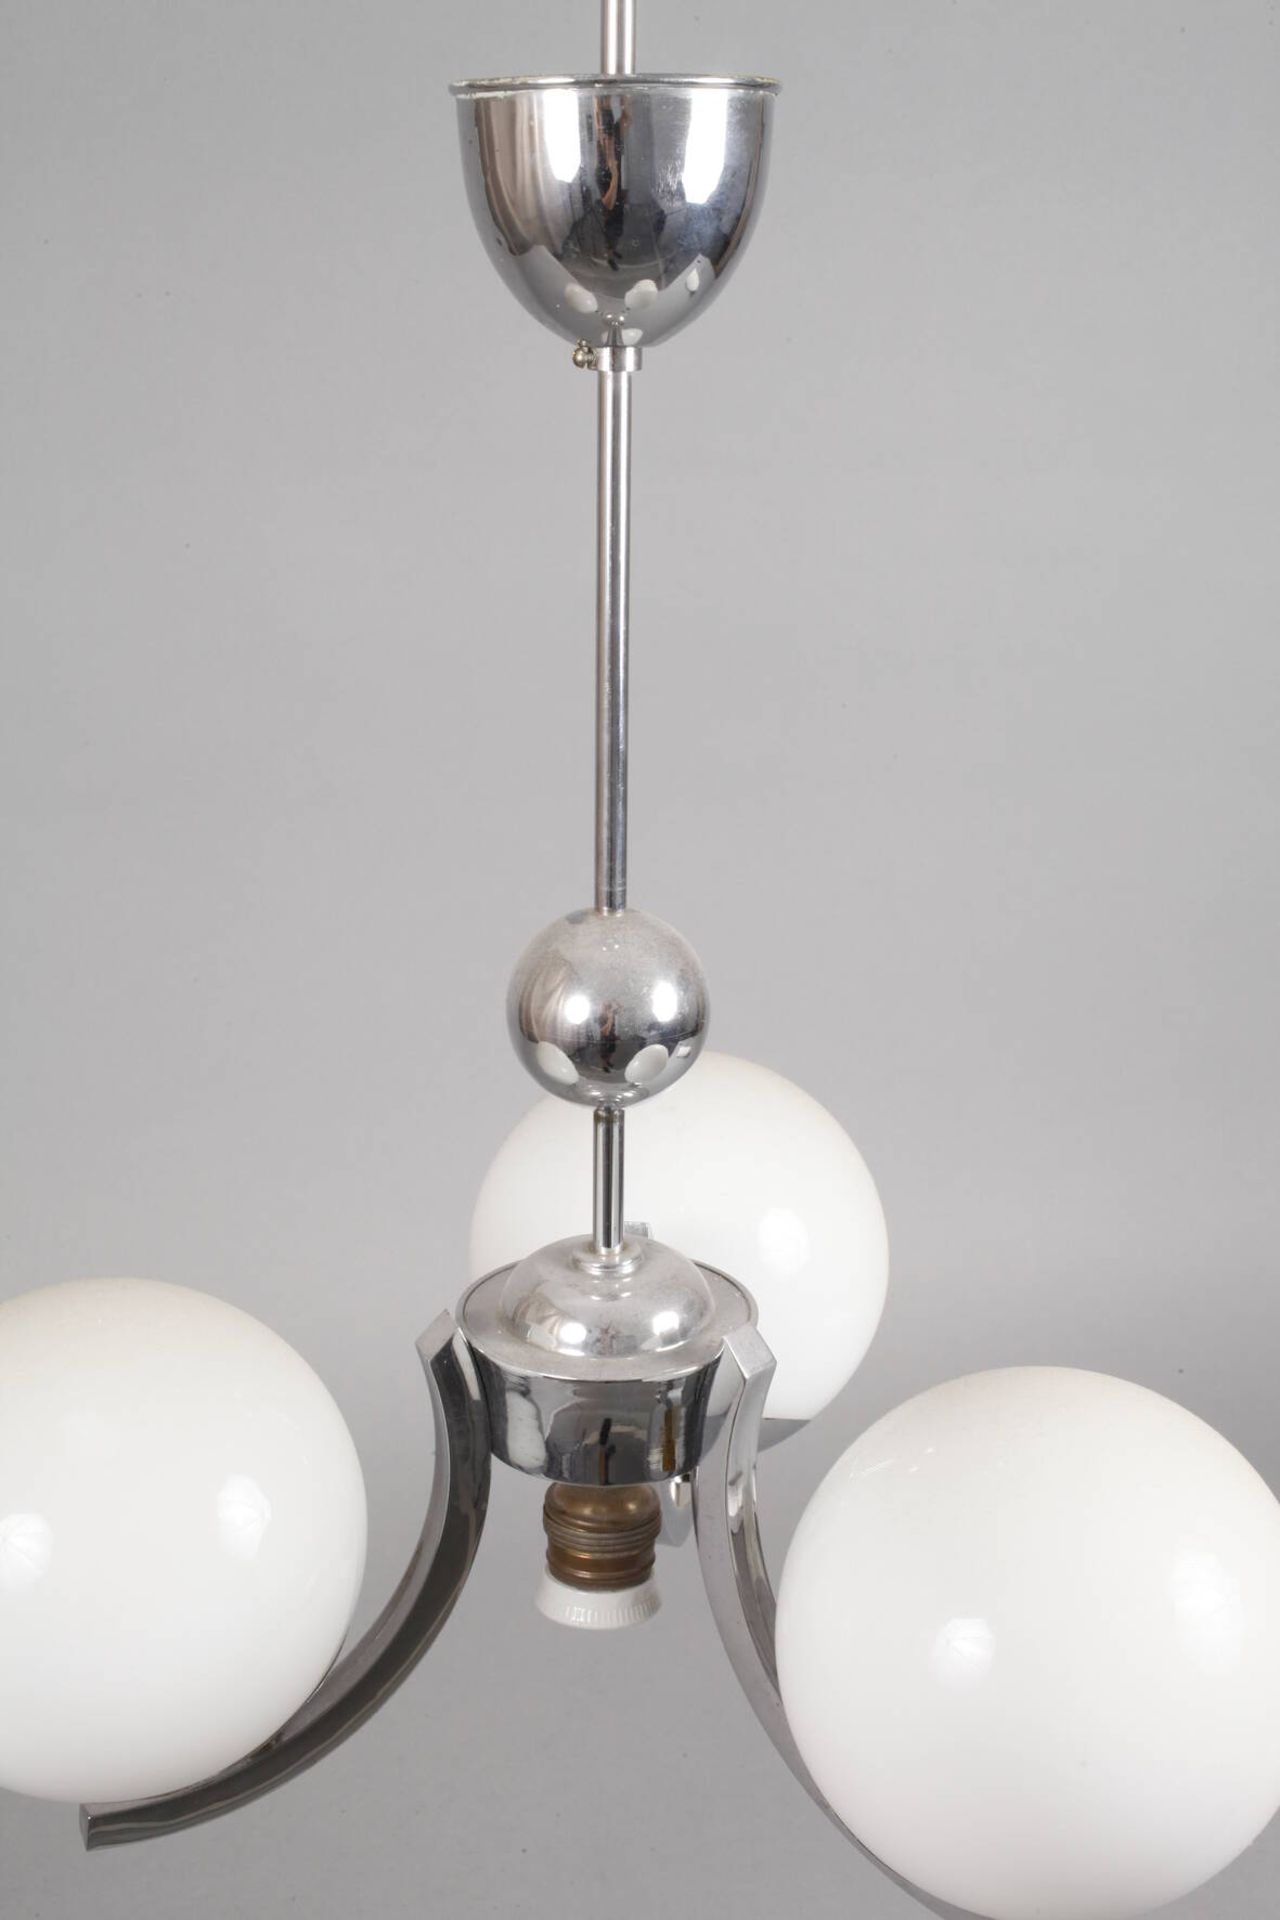 Drei Deckenlampen Art déco1920er Jahre, verchromte Metallgestänge mit jeweils drei kurzen, c- - Bild 3 aus 8